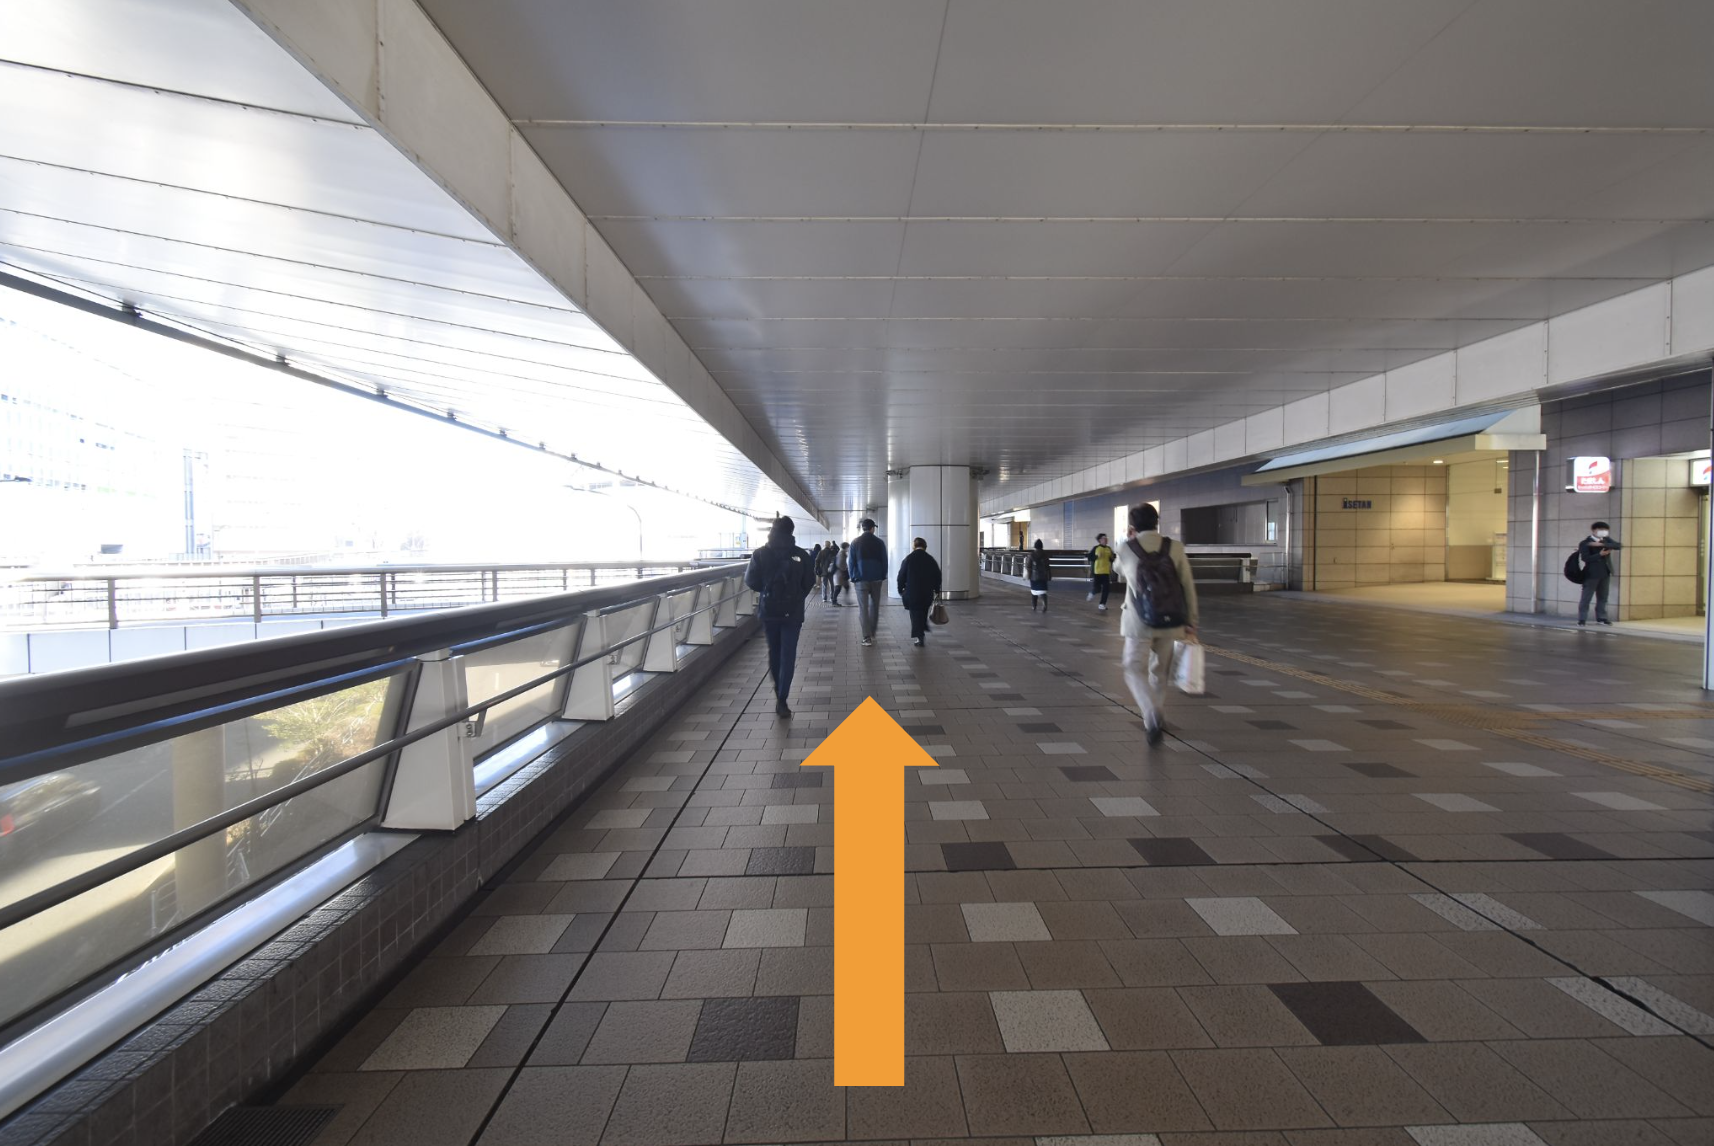 モノレール「立川北」駅のガード下をまっすぐ進みます。ここから目的地までは一直線です